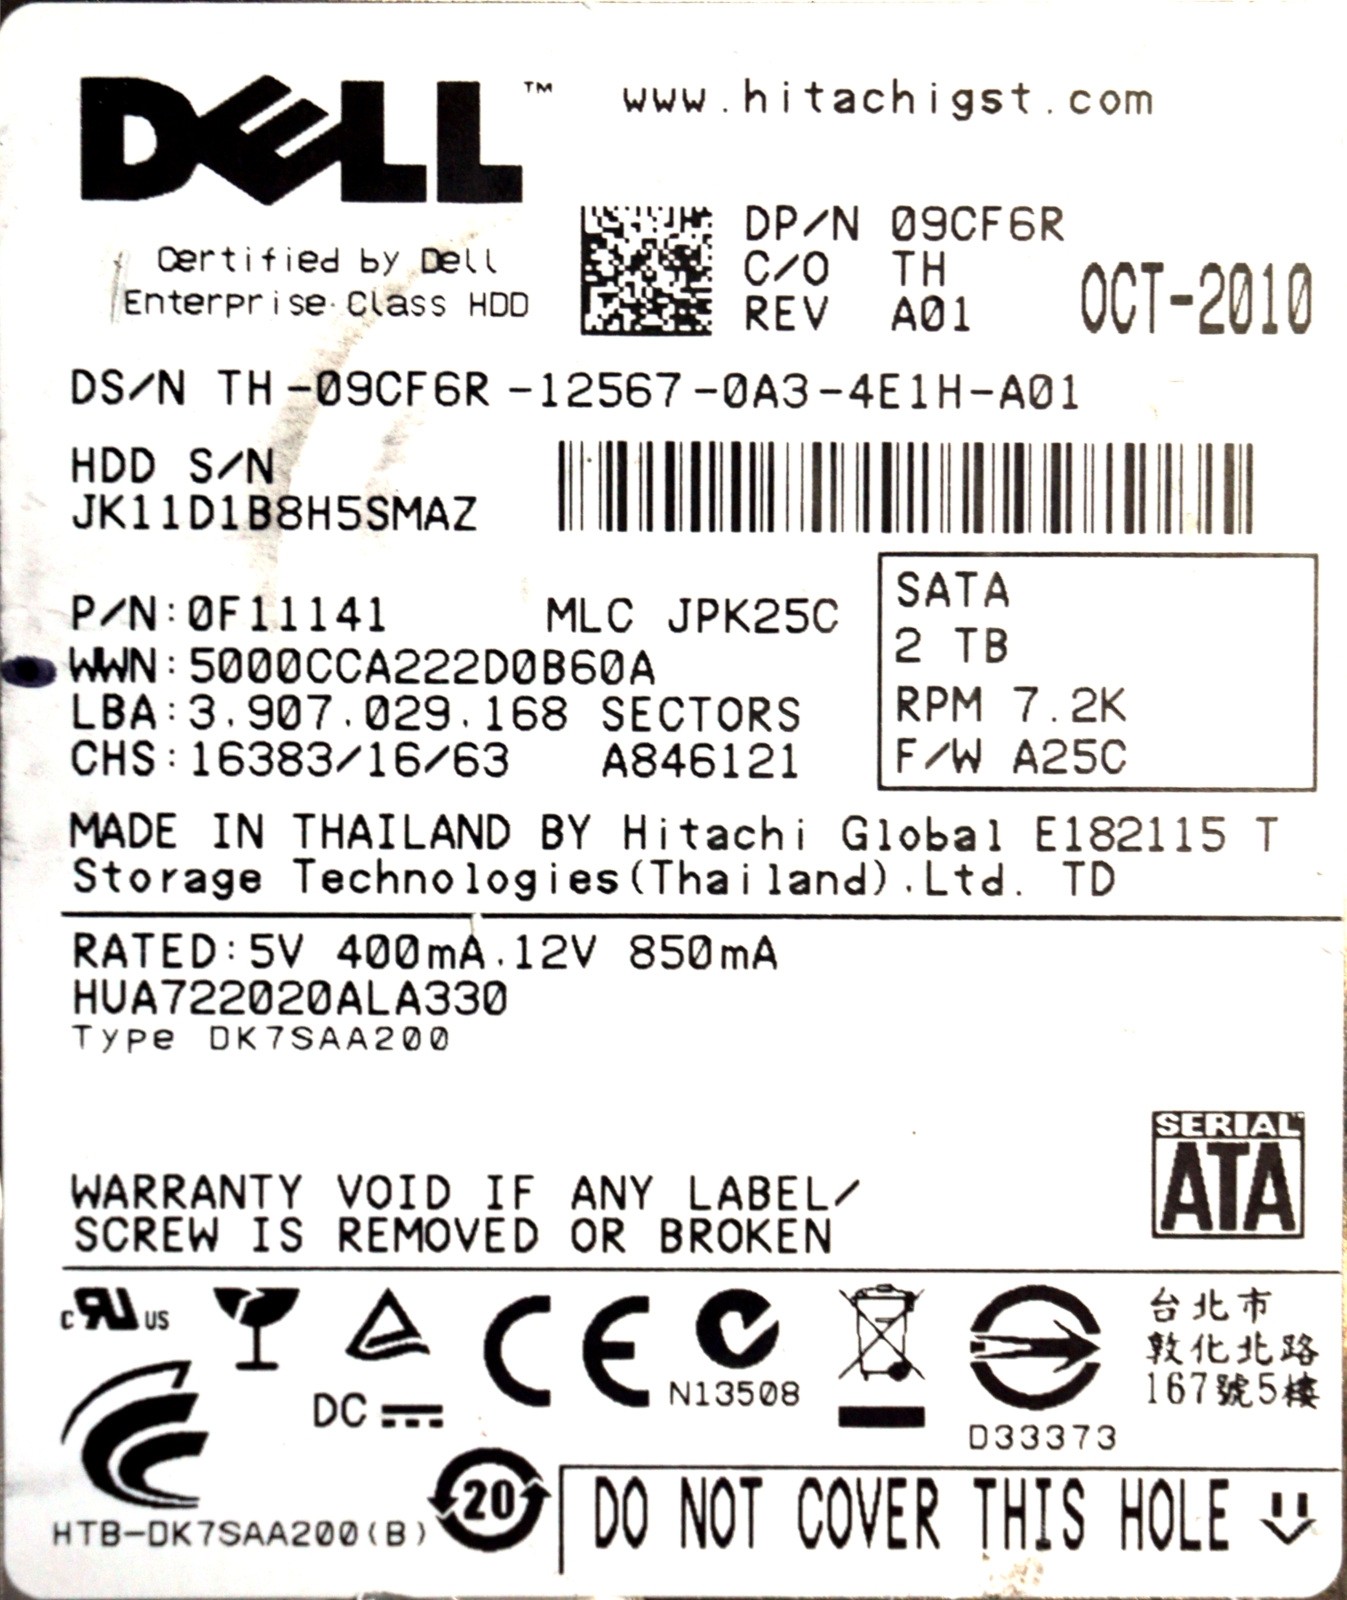 Dell (9CF6R) 2TB SATA II (LFF) 3Gb/s 7.2K HDD